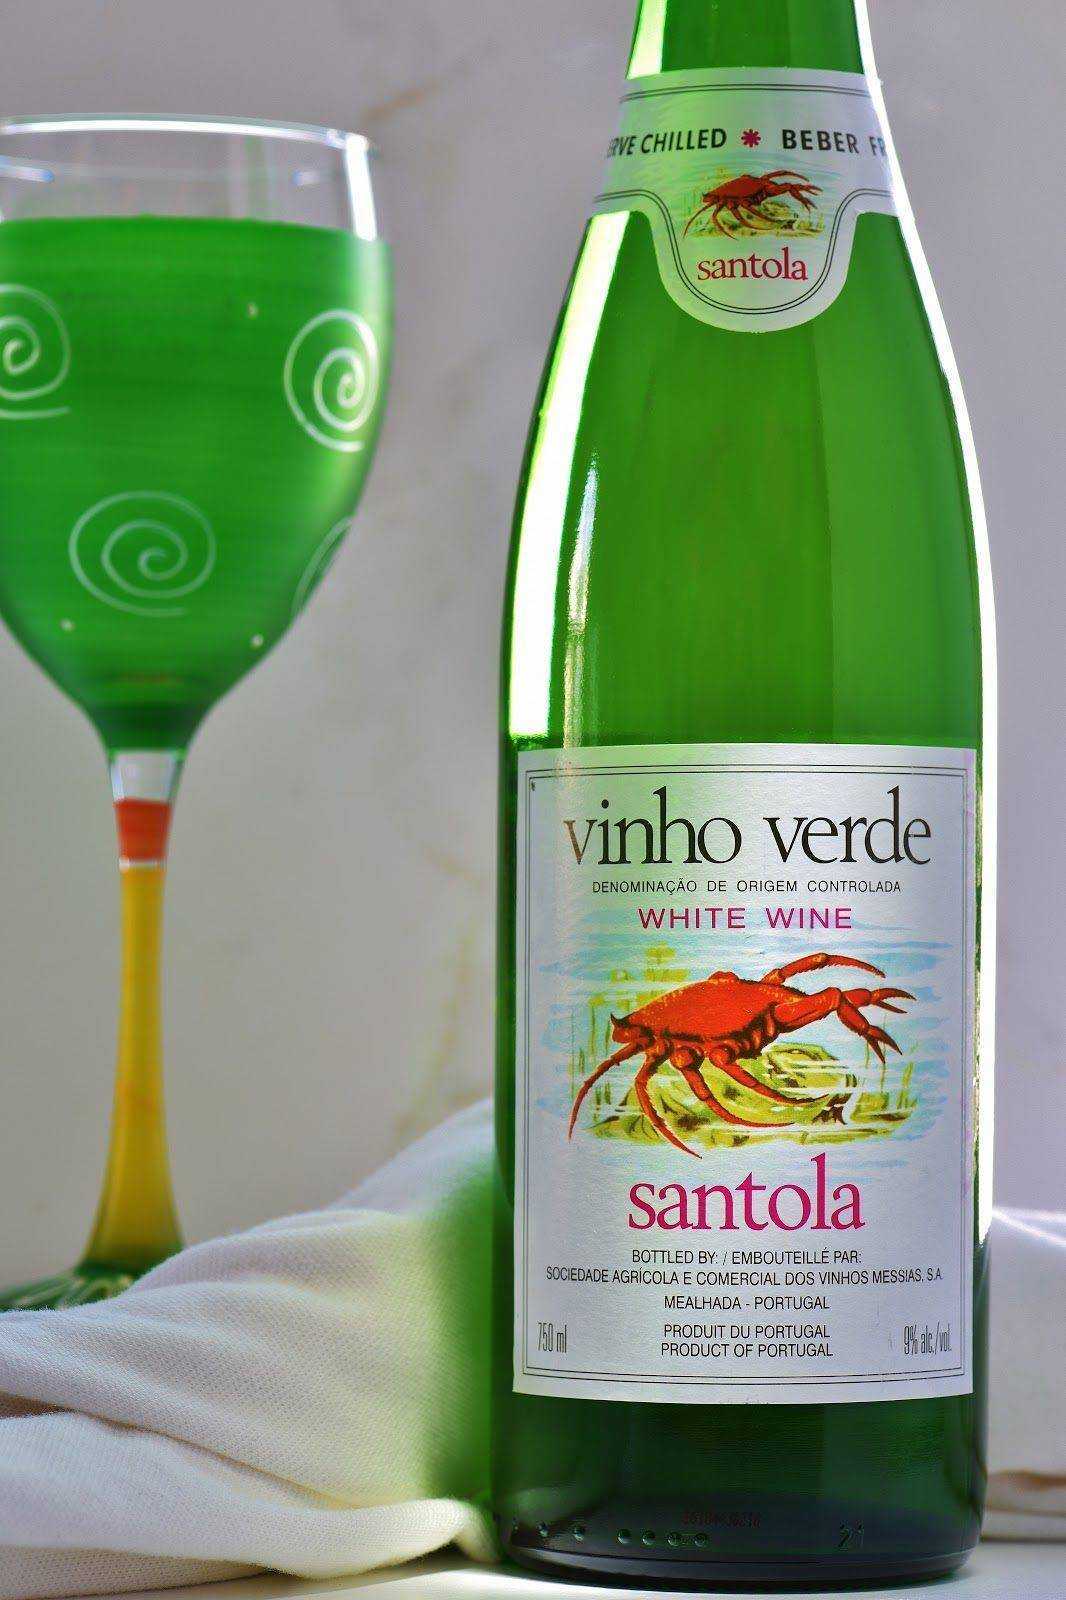 Зеленое вино из португалии — особенности напитка